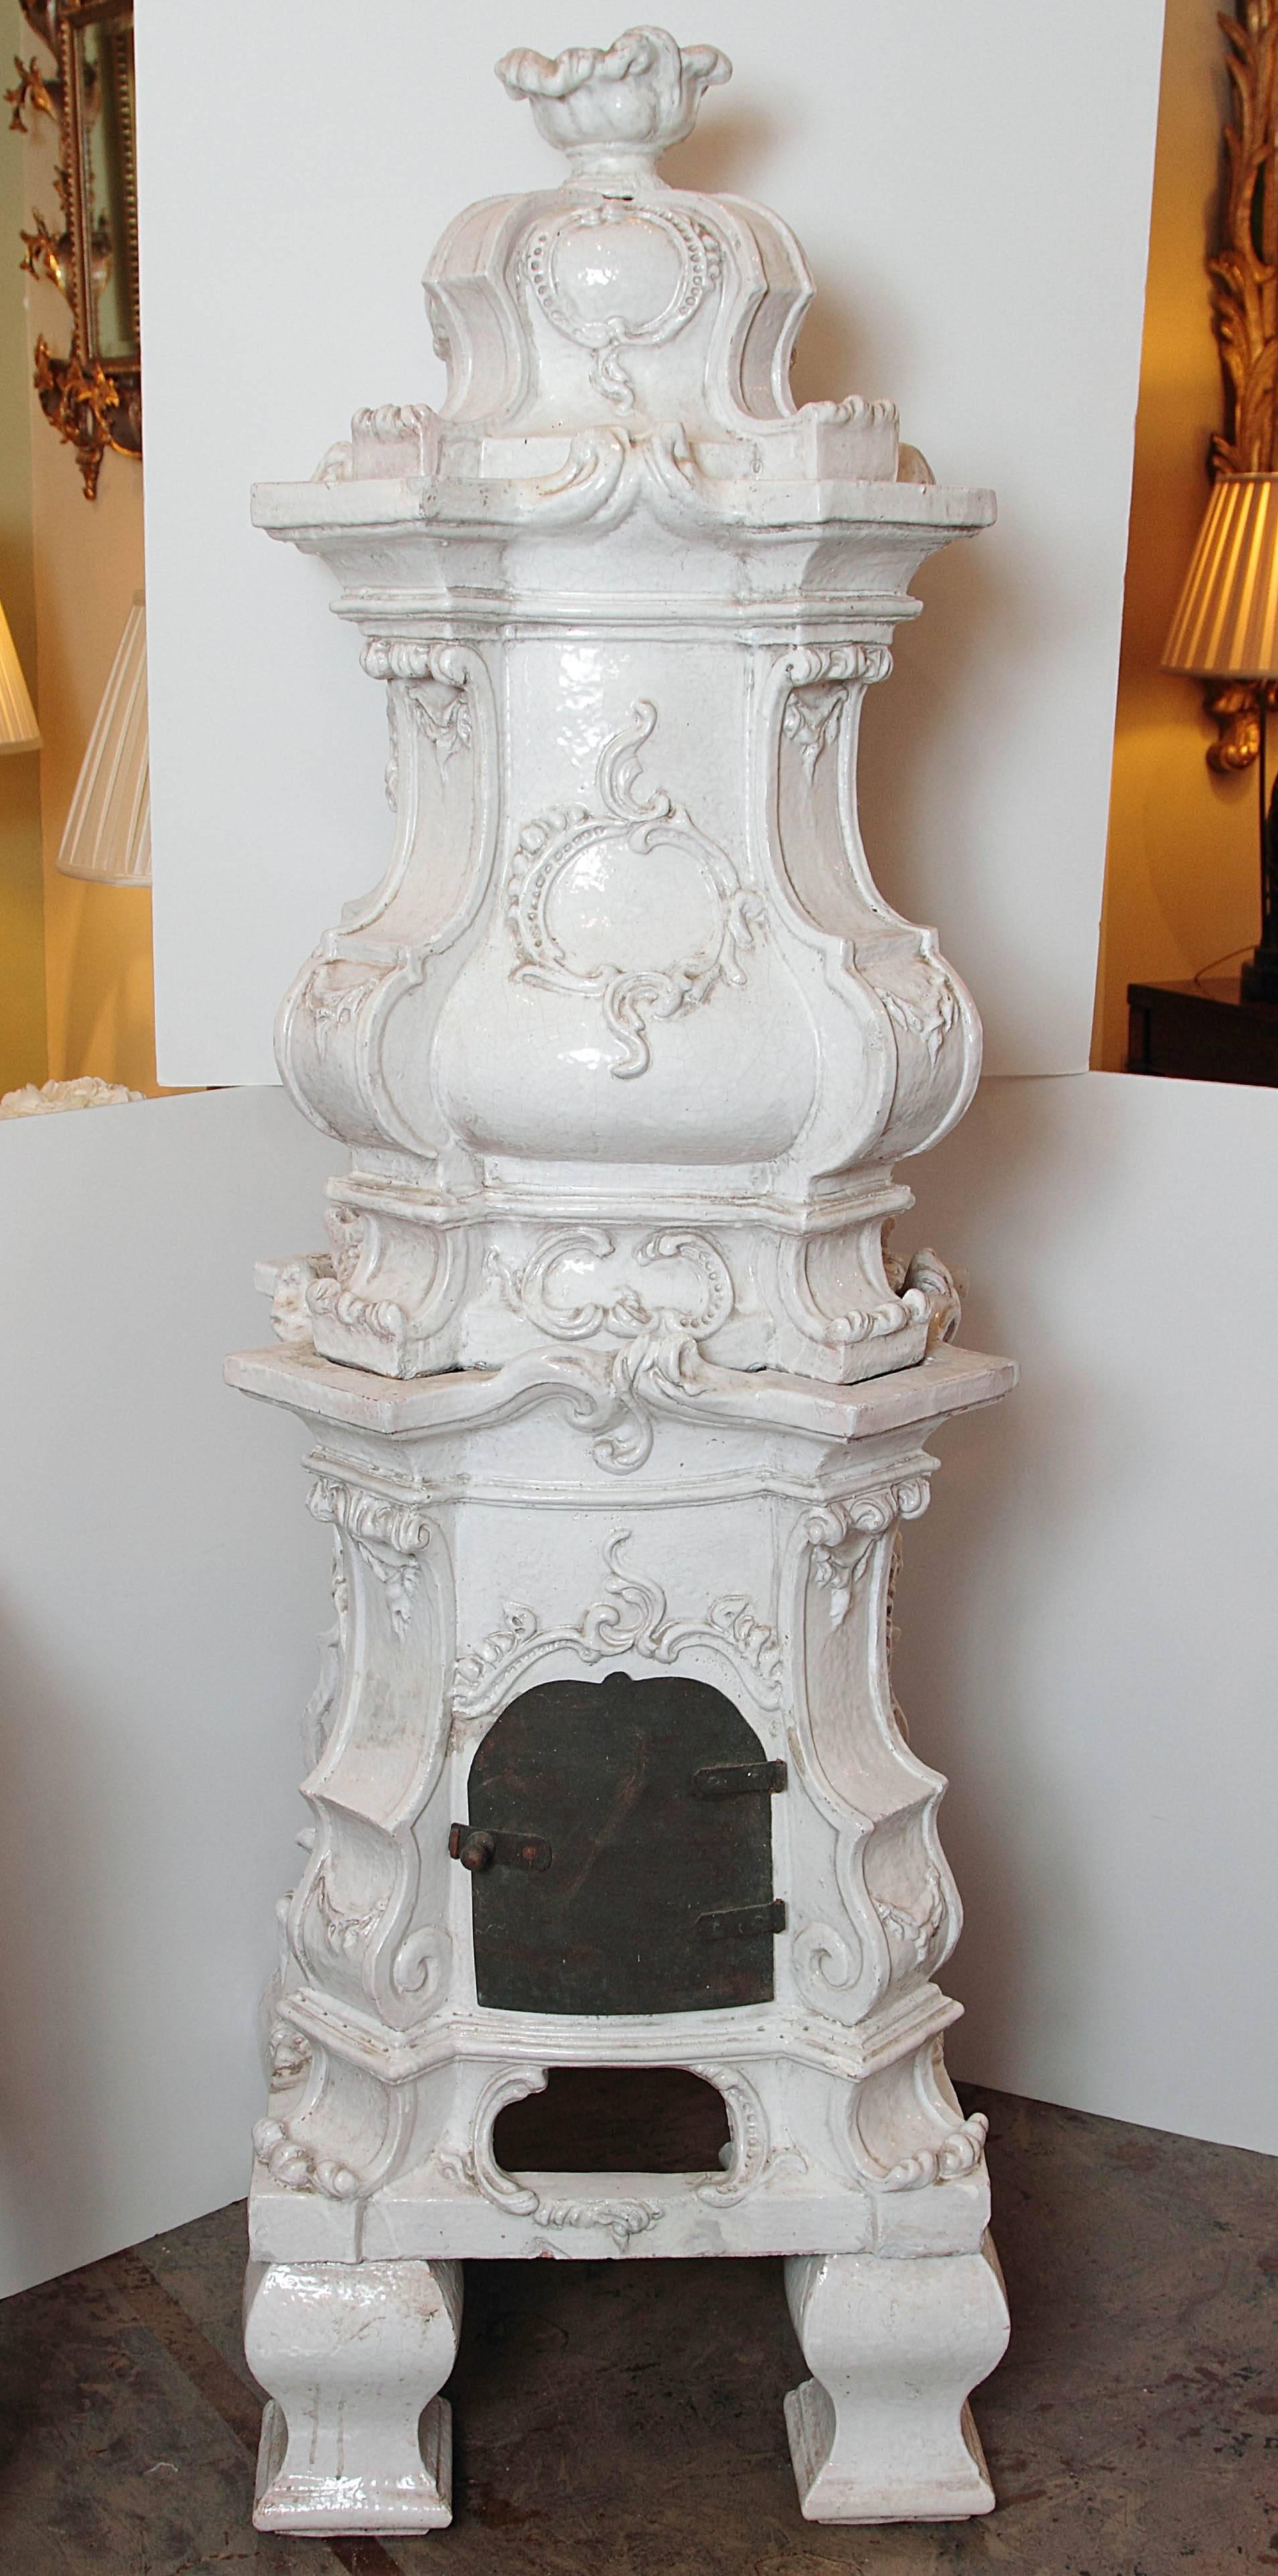 19th century French terra cotta stove. Rococo design.